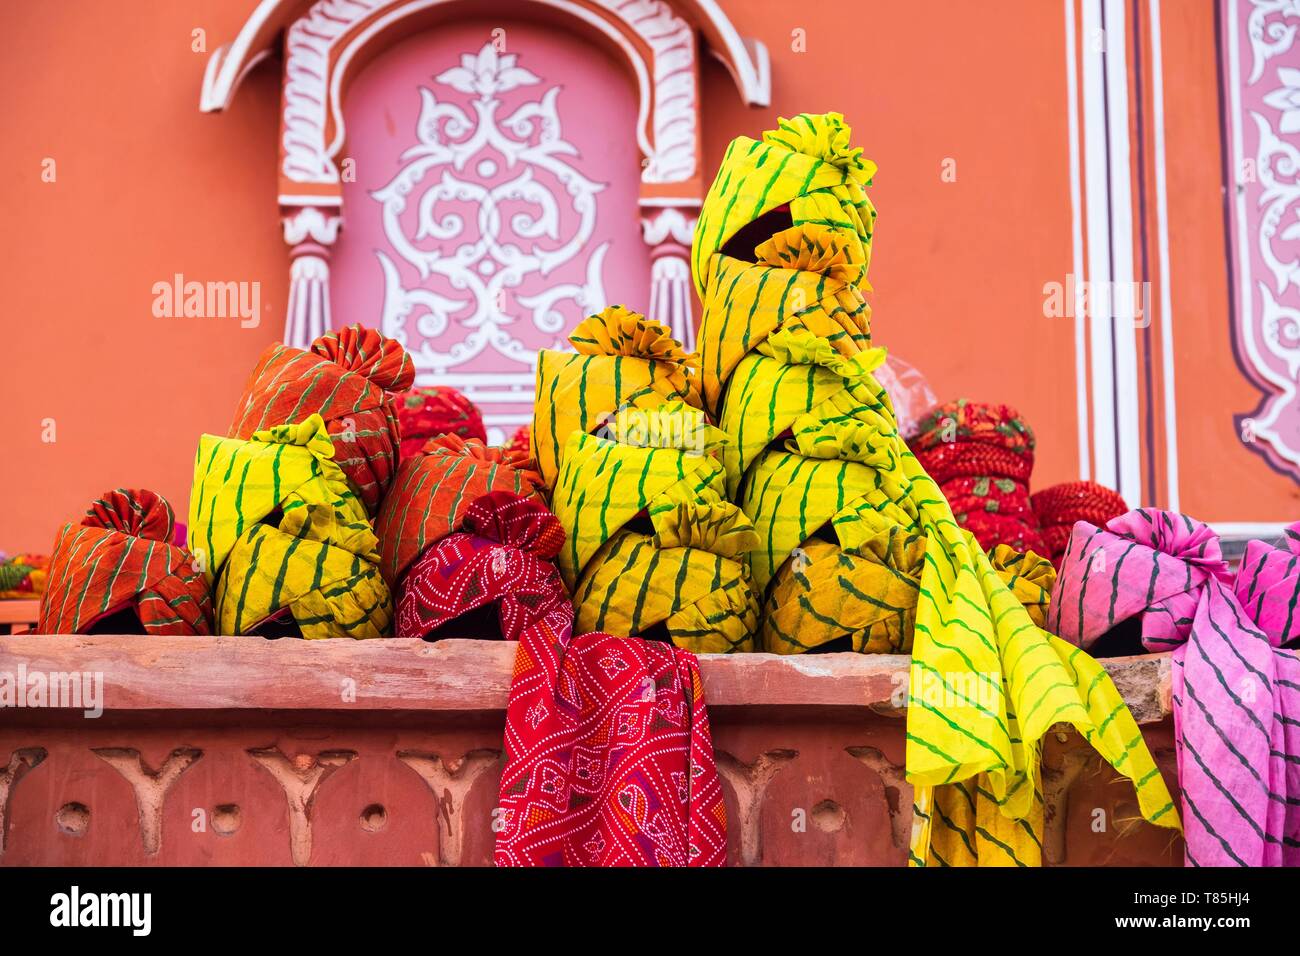 India, Rajasthan, Jaipur, Johari Bazar, turban shop Stock Photo